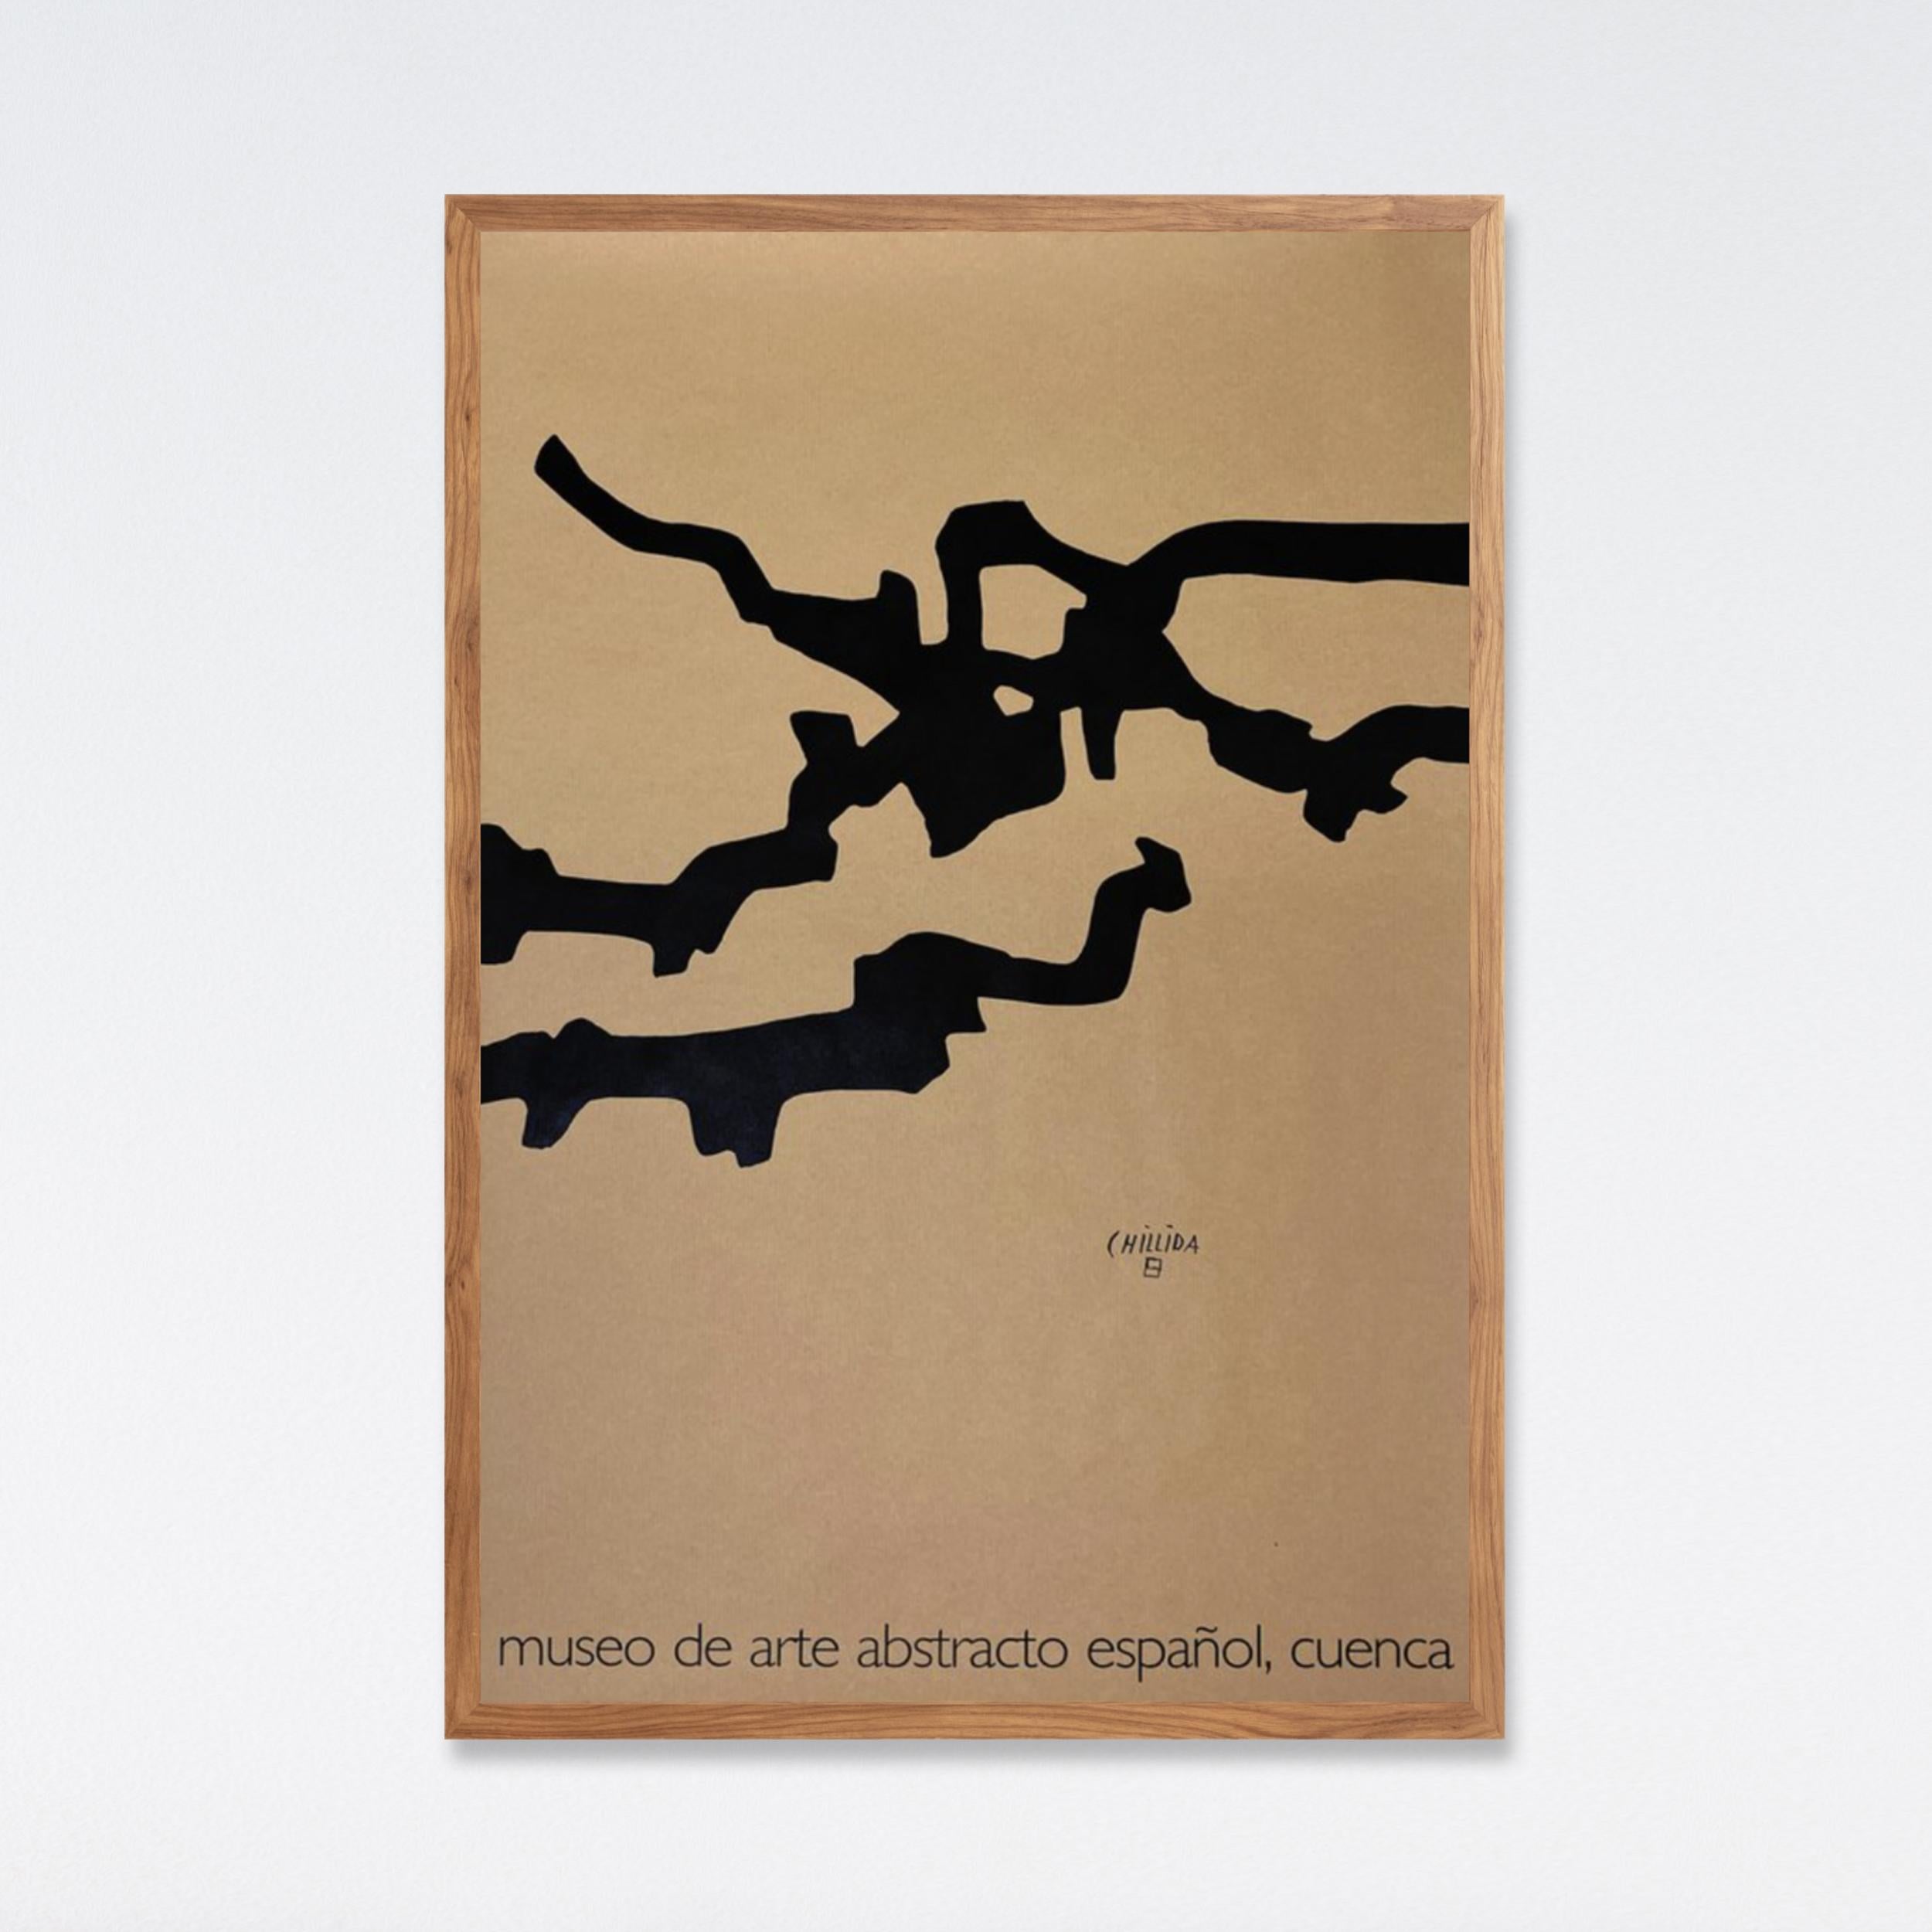 Eduardo Chillida, Mármol y plomo (Marble and lead), 2004 Lithographic poster 4